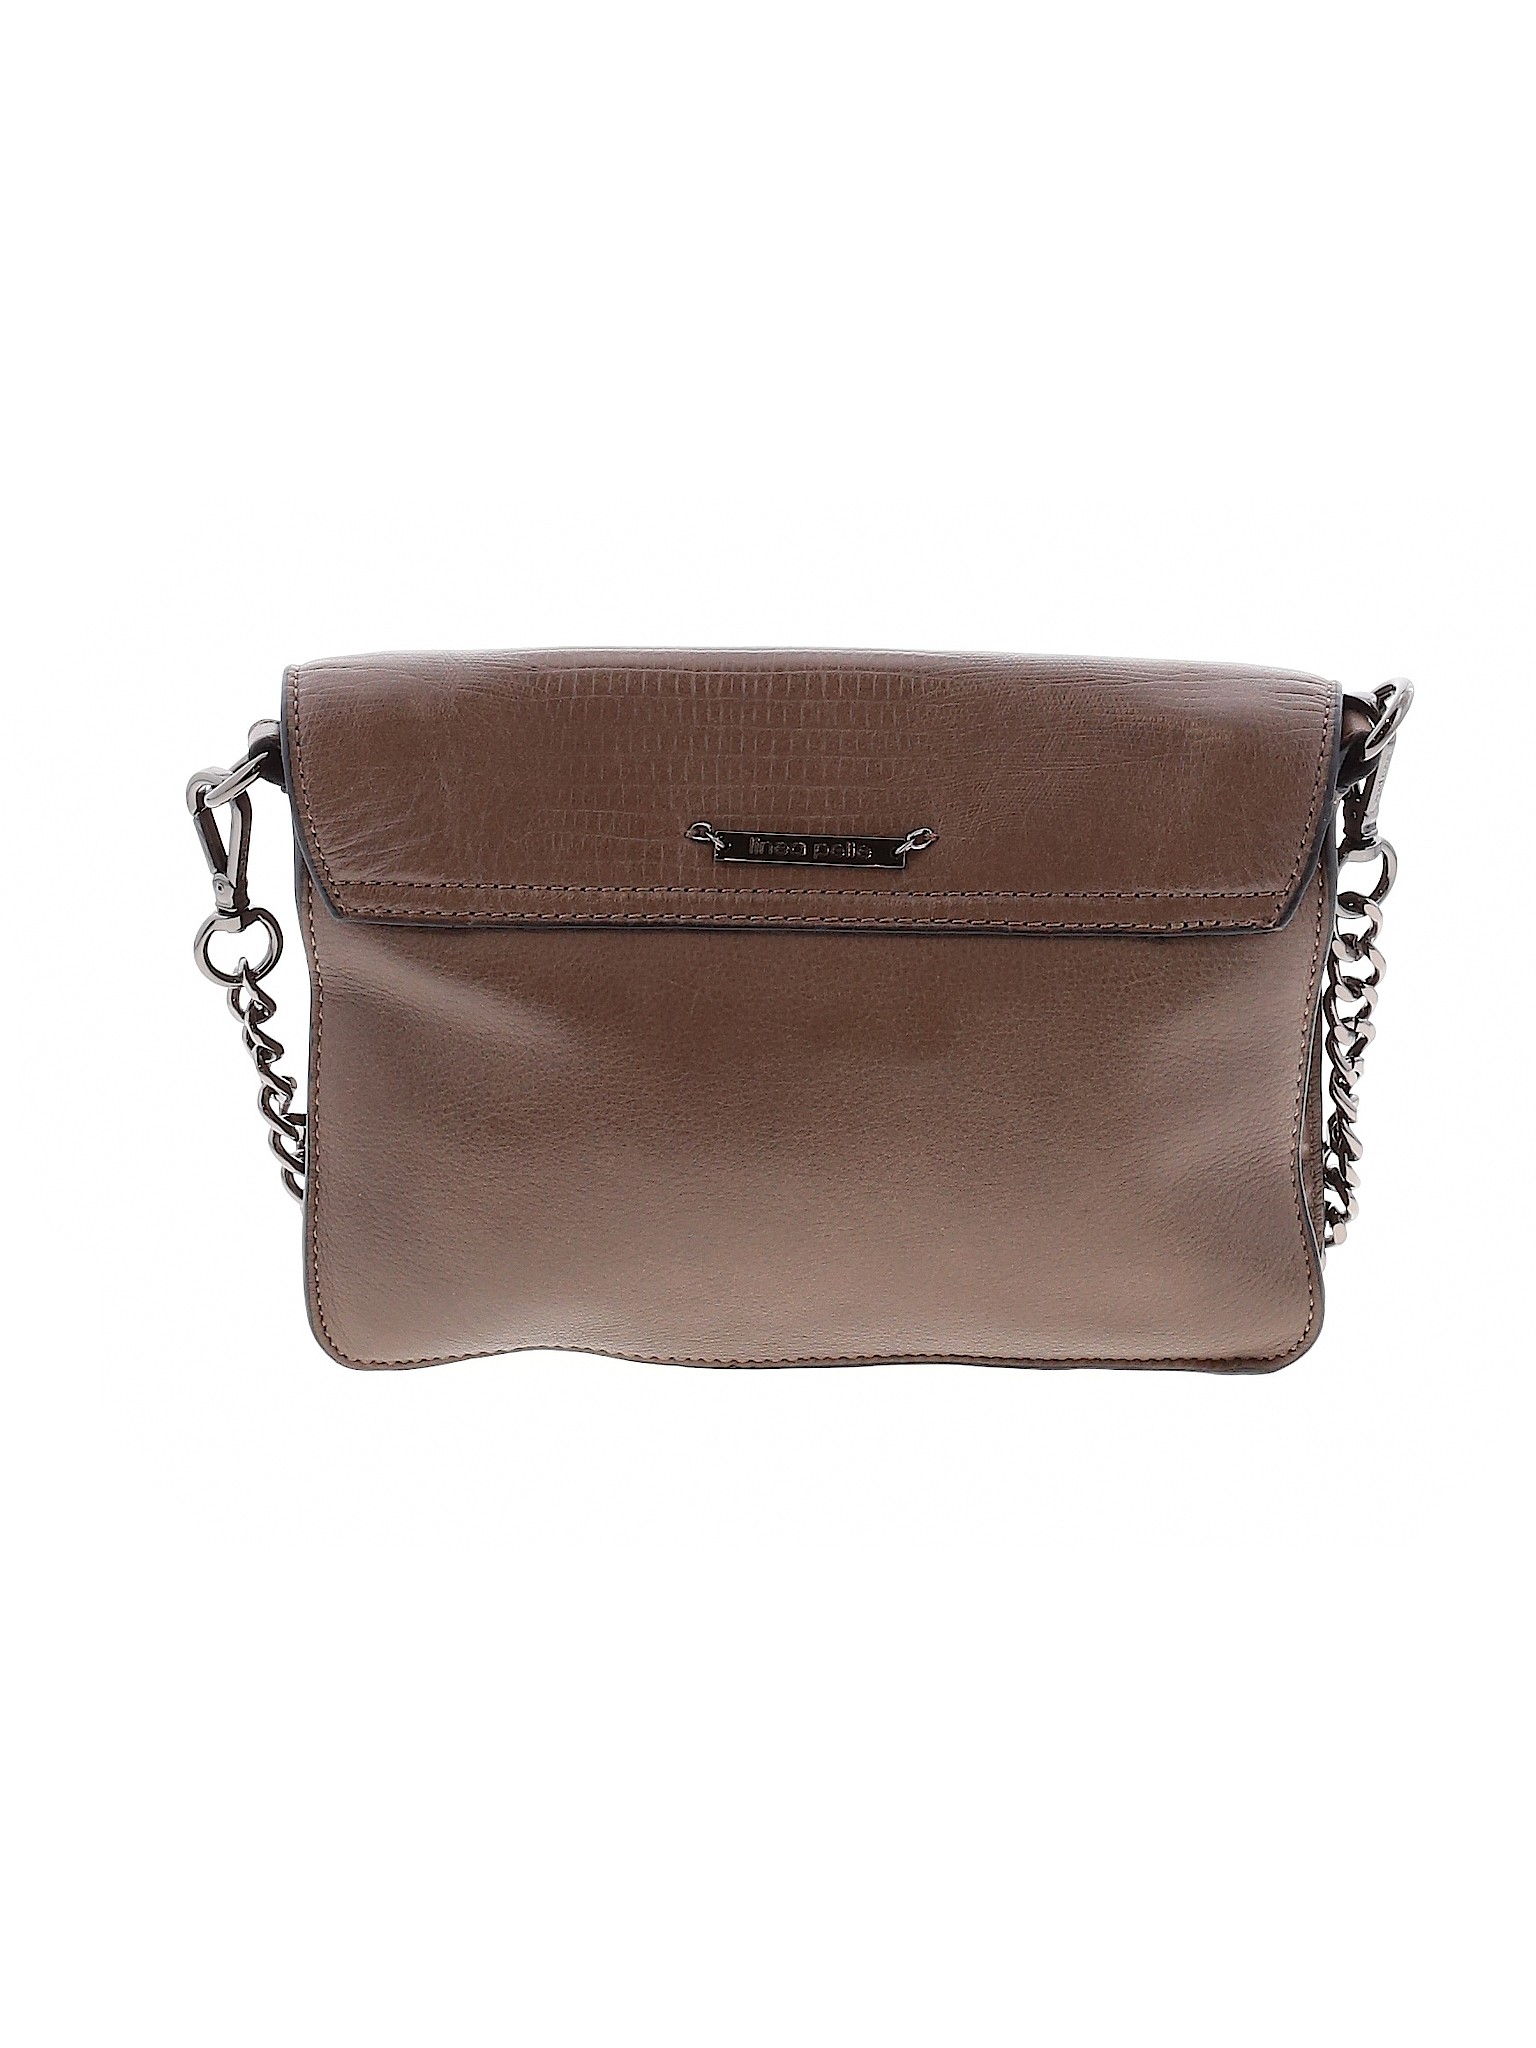 Linea Pelle Women Brown Leather Crossbody Bag One Size | eBay